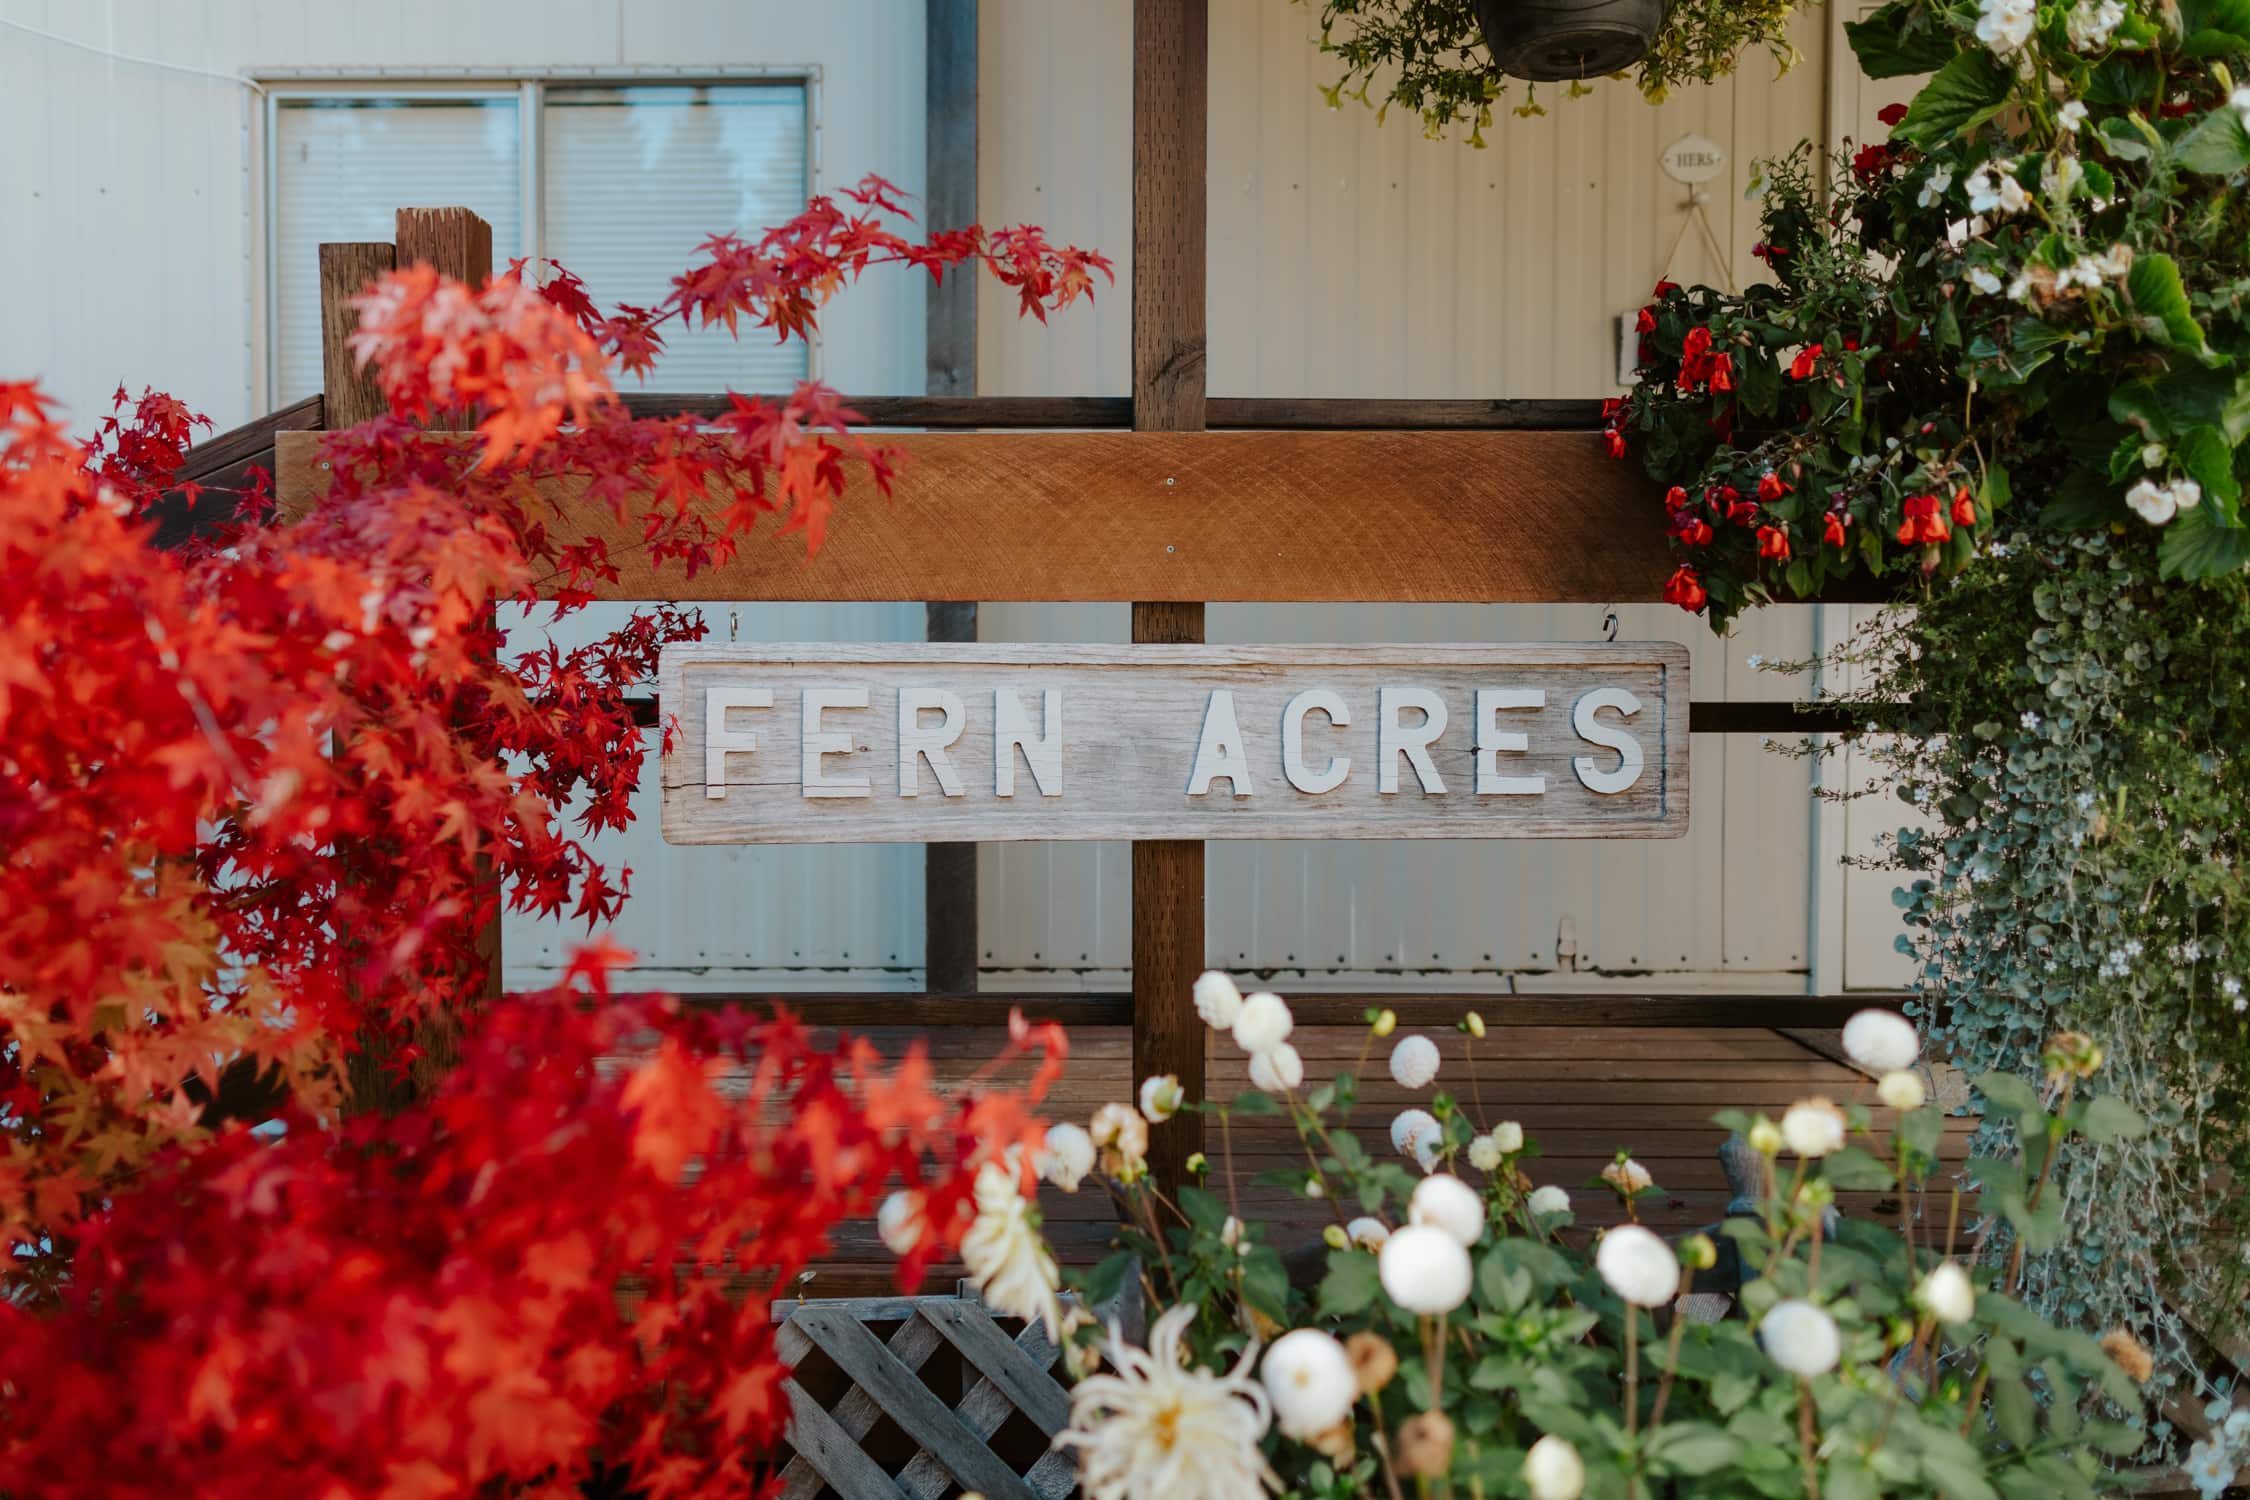 Fern Acres sign in Forks, Washington.